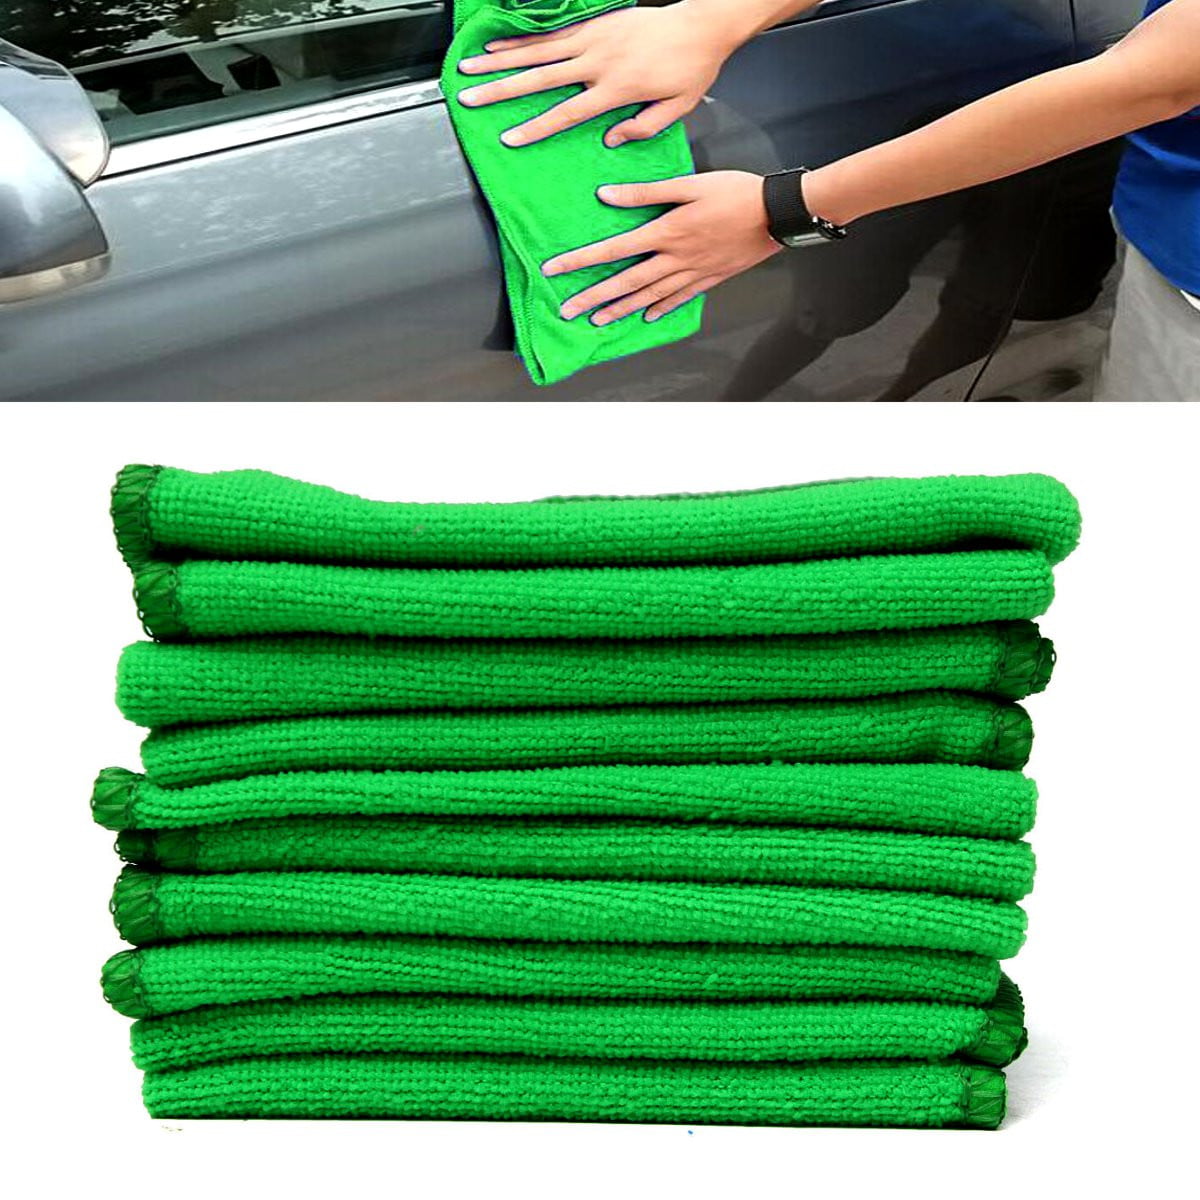 10Pcs Green Micro Fiber Auto Car Detailing Cleaning Duster Towel S0U4 Cloth D8P8 